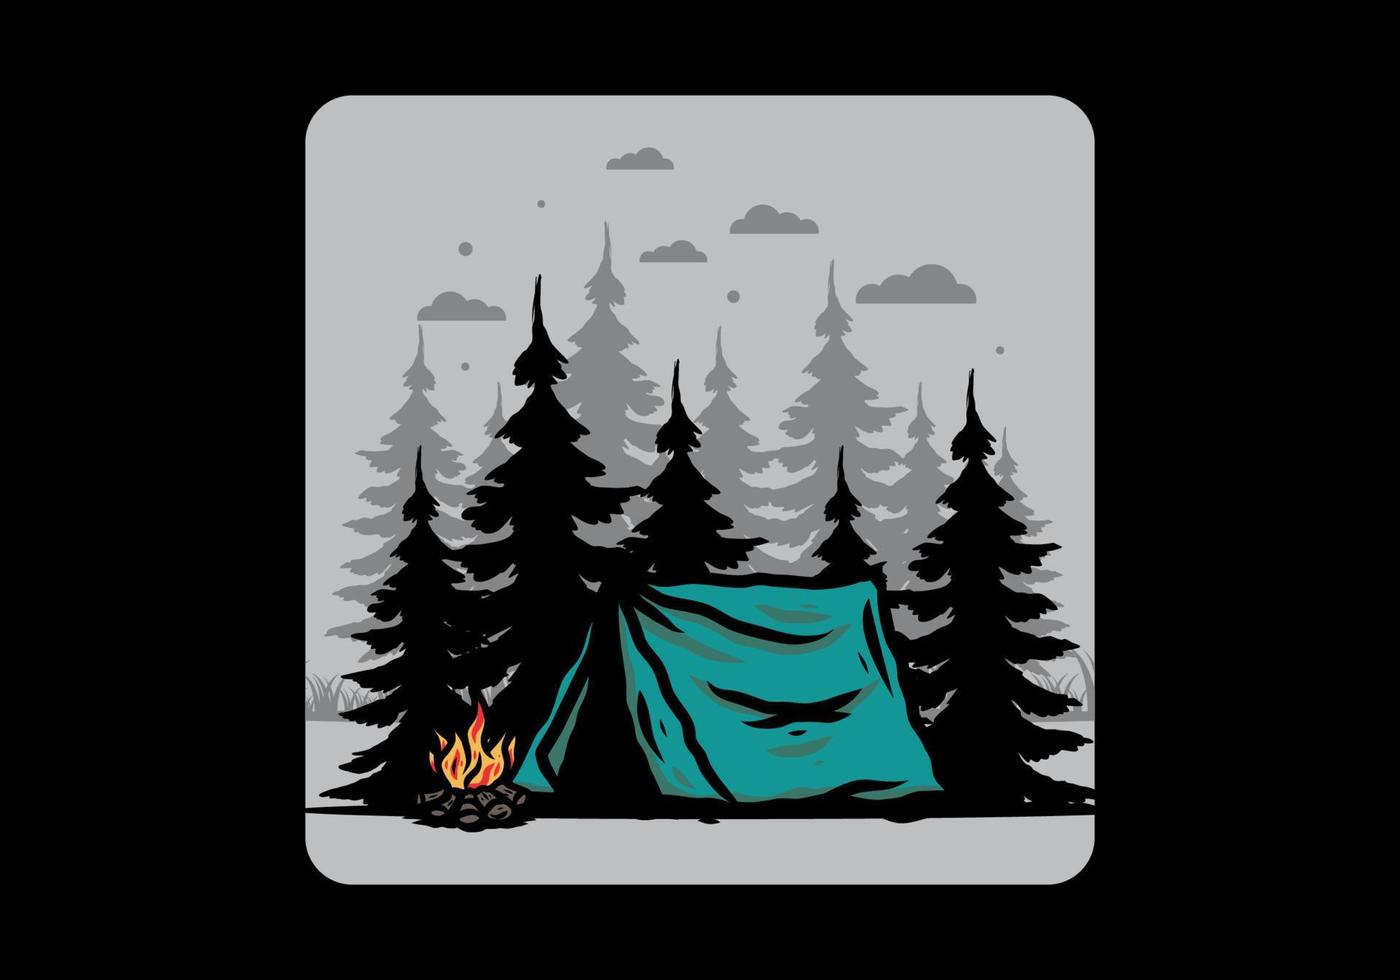 acampamento à meia-noite com ilustração de fogueira vetor